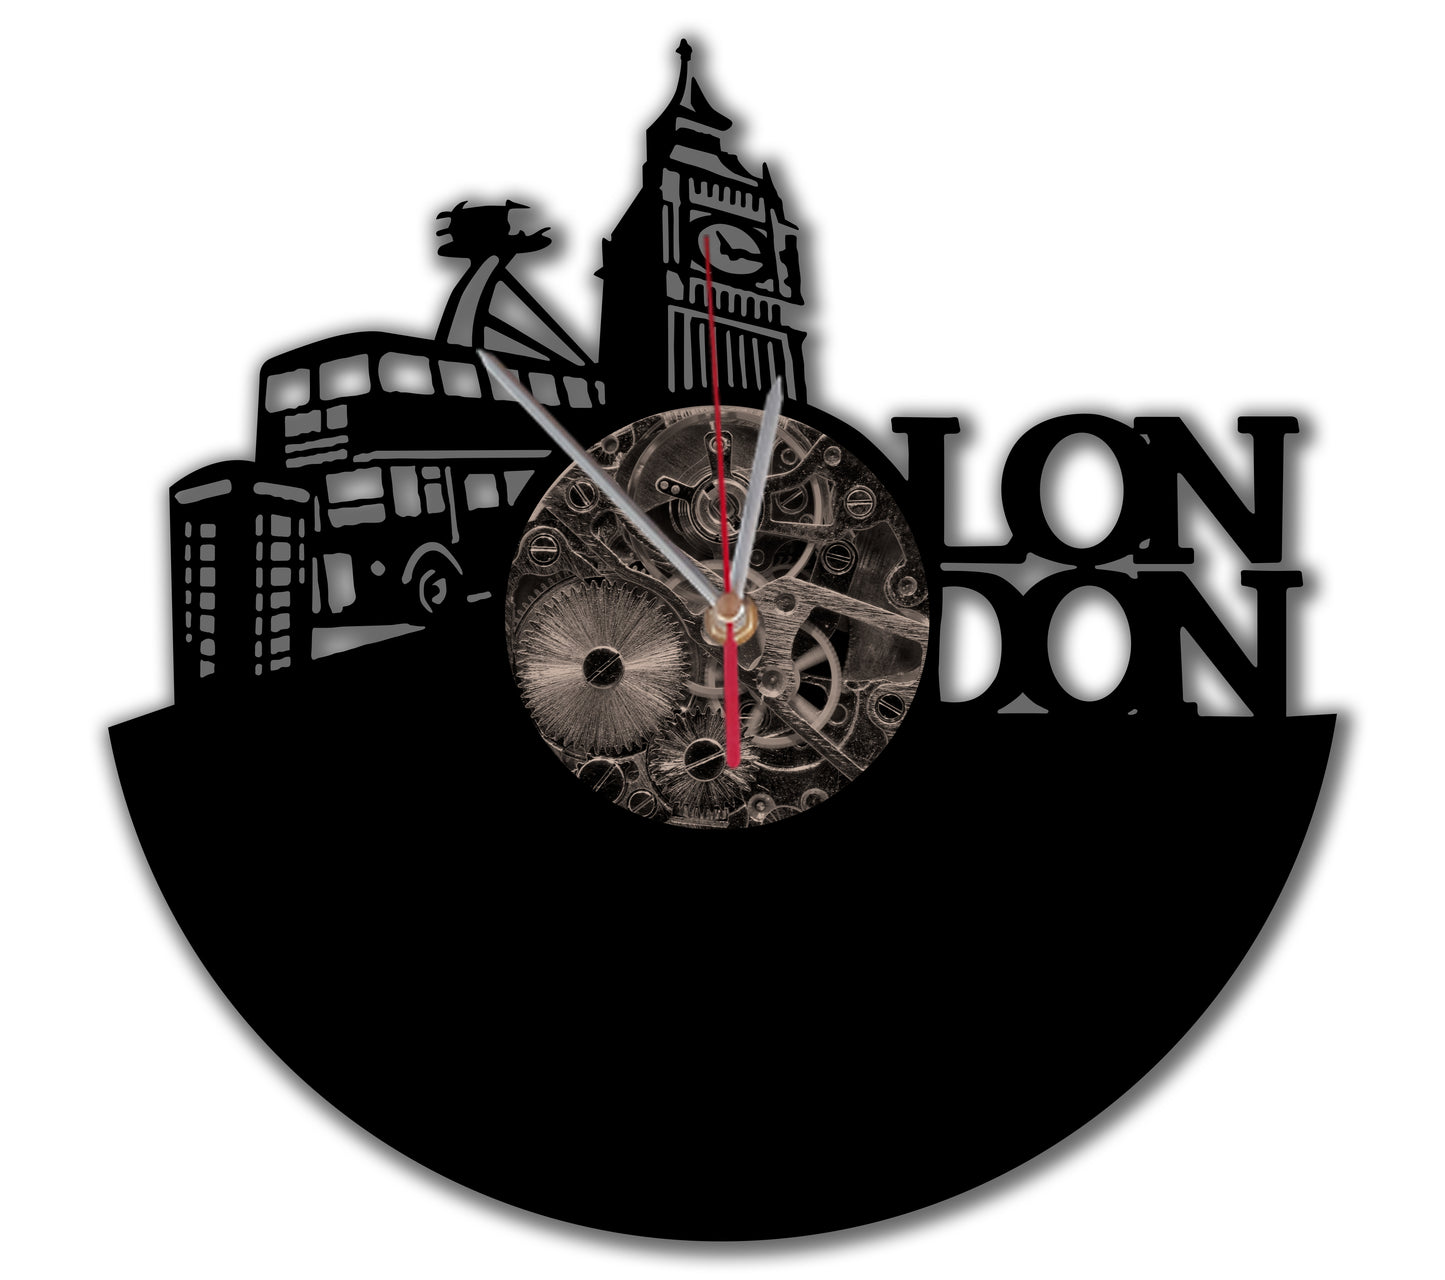 "LONDON" clock